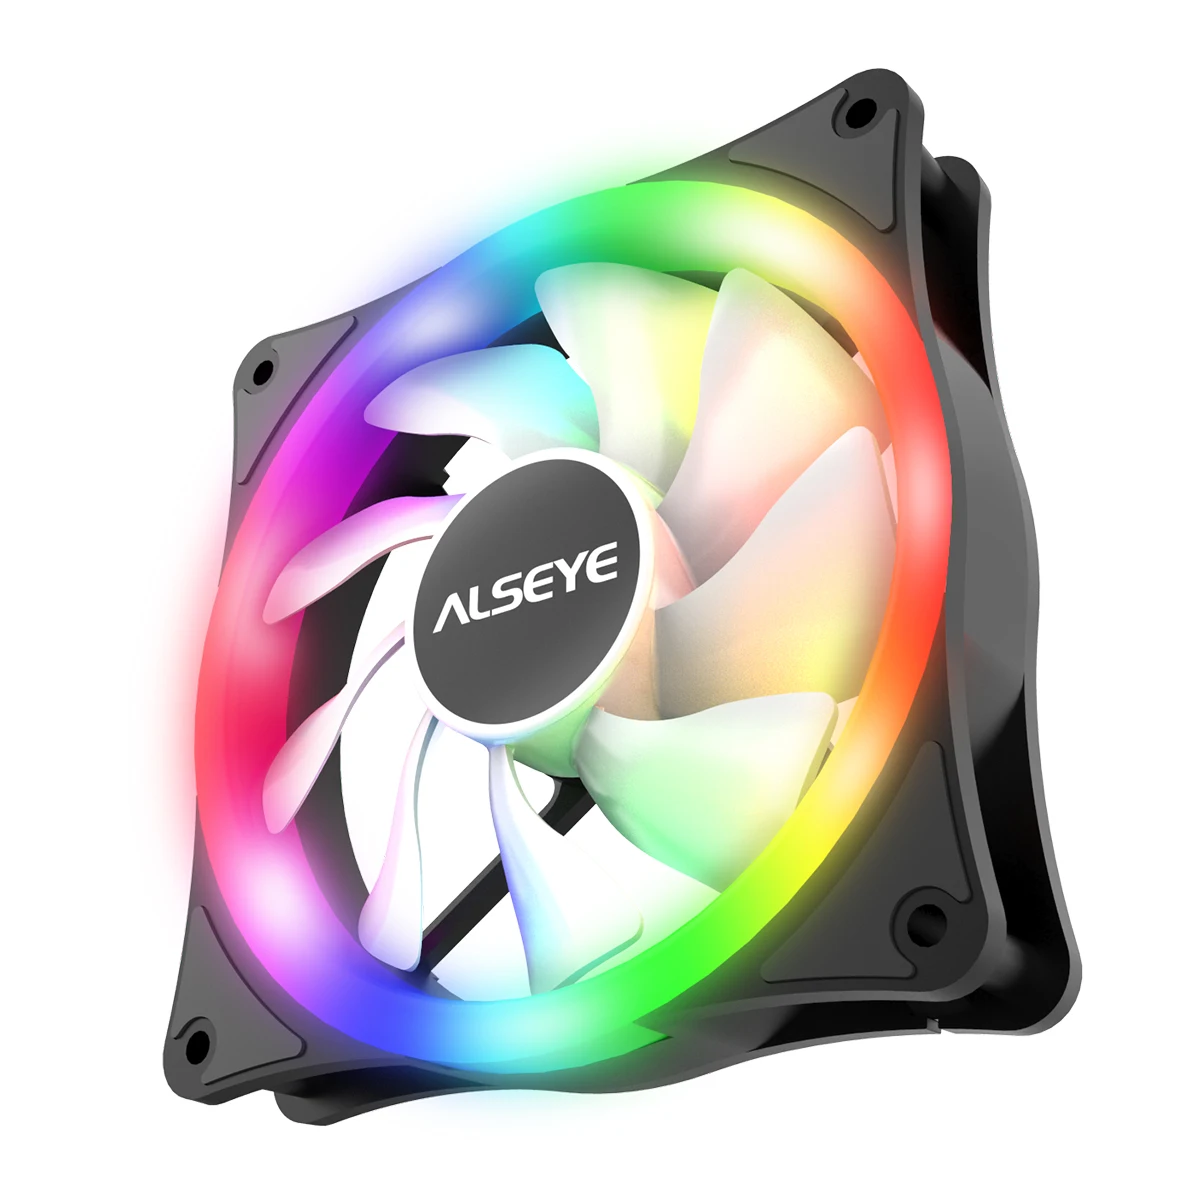 ALSEYE AURO серия 140 мм светодиодный чехол для компьютера Вентилятор охлаждения Molex 4-контактный разъем